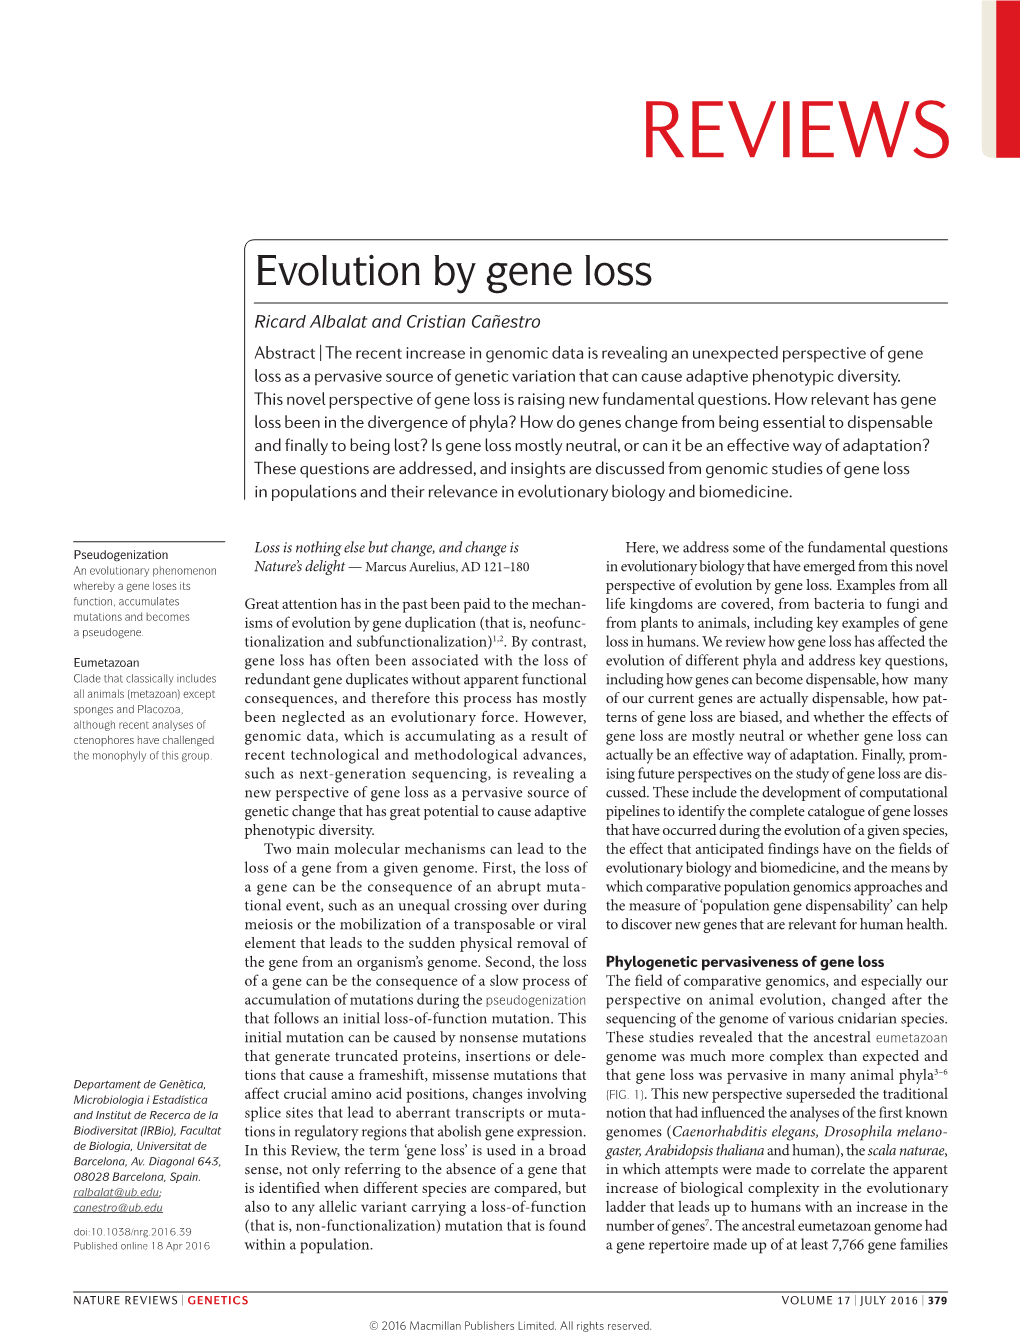 Evolution by Gene Loss